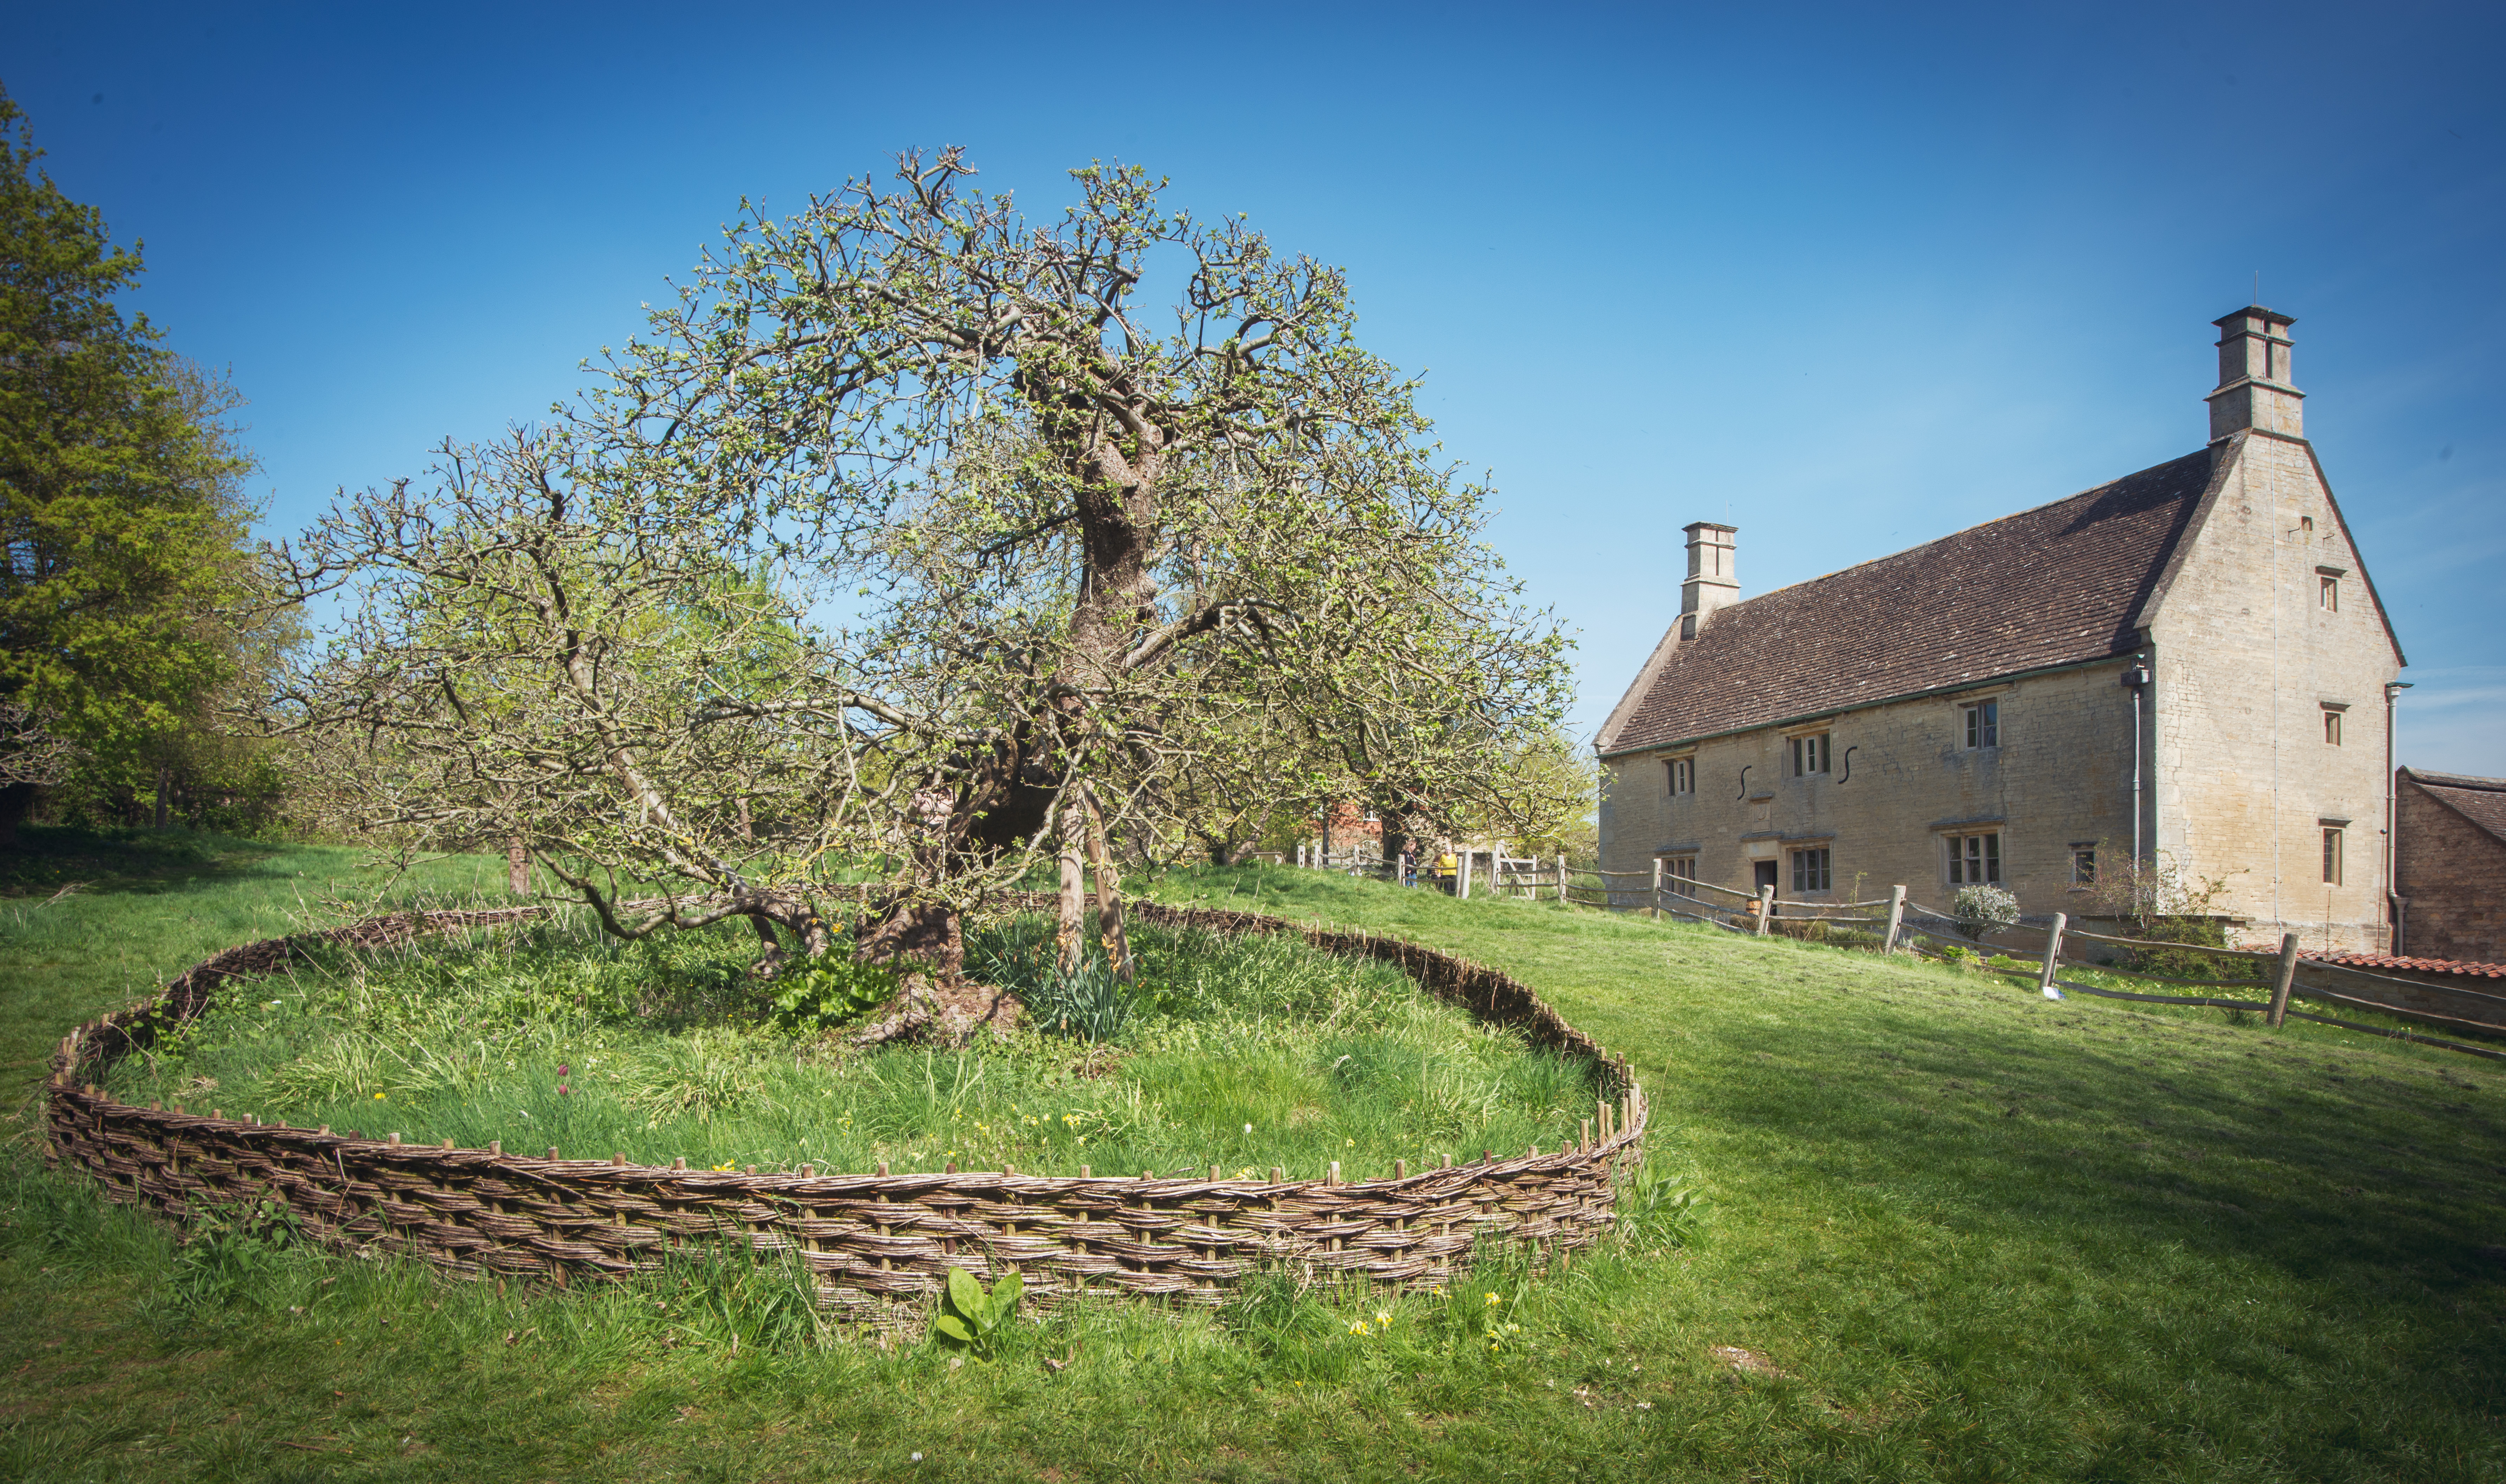 Woolsthorpe Manor, a antiga casa de Isaac Newton e en primeiro plano a maceira entendida como a famosa árbore que o inspirou na teoría da gravidade.